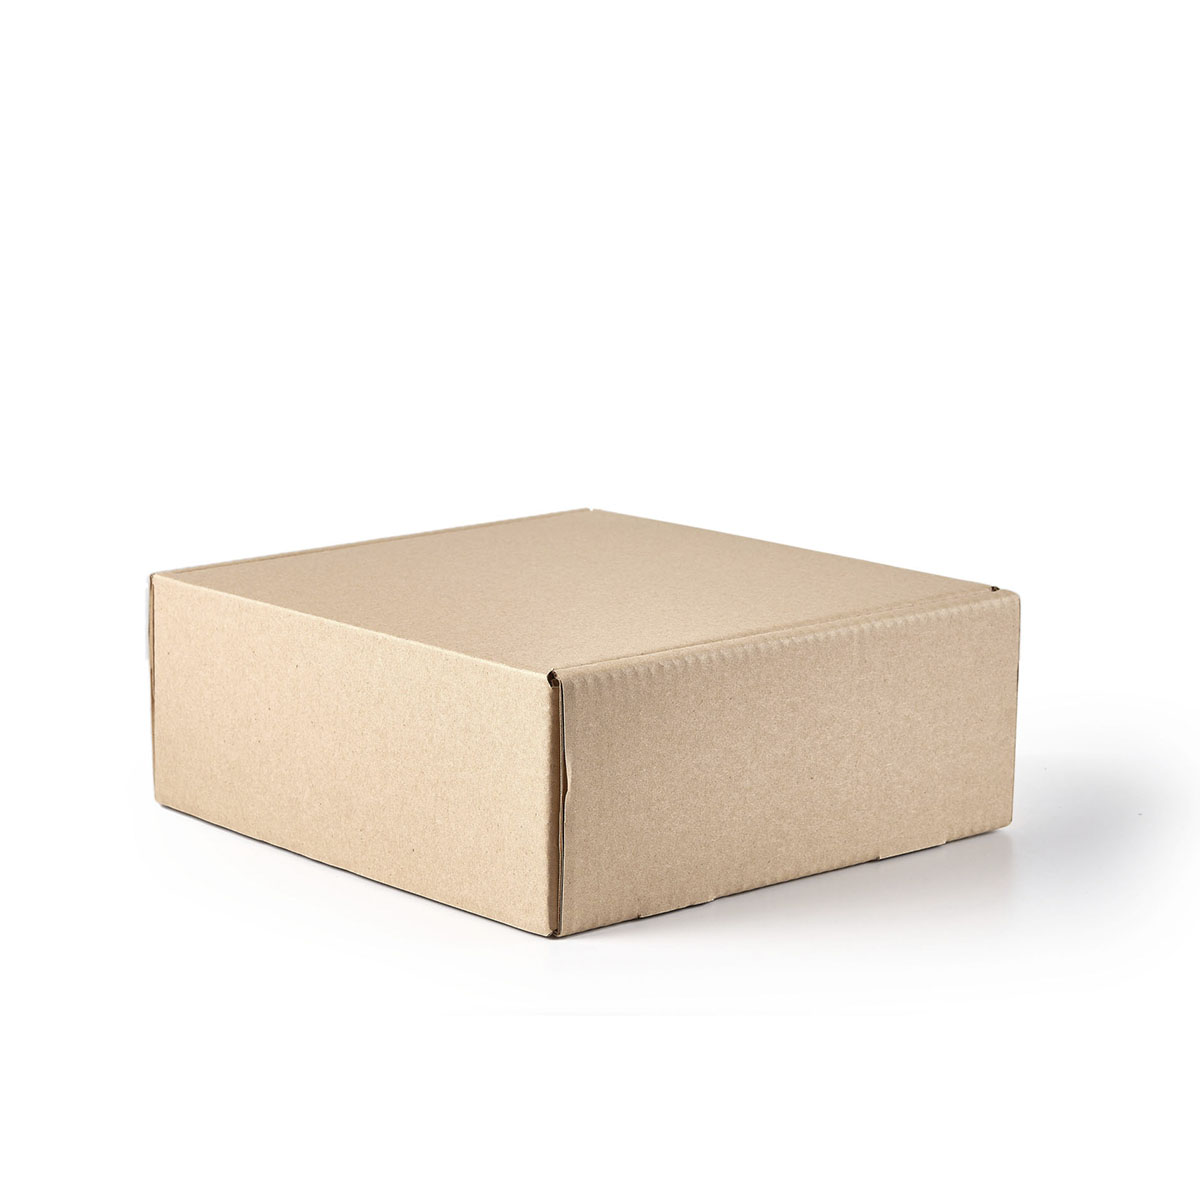 Caja de cartón para envíos